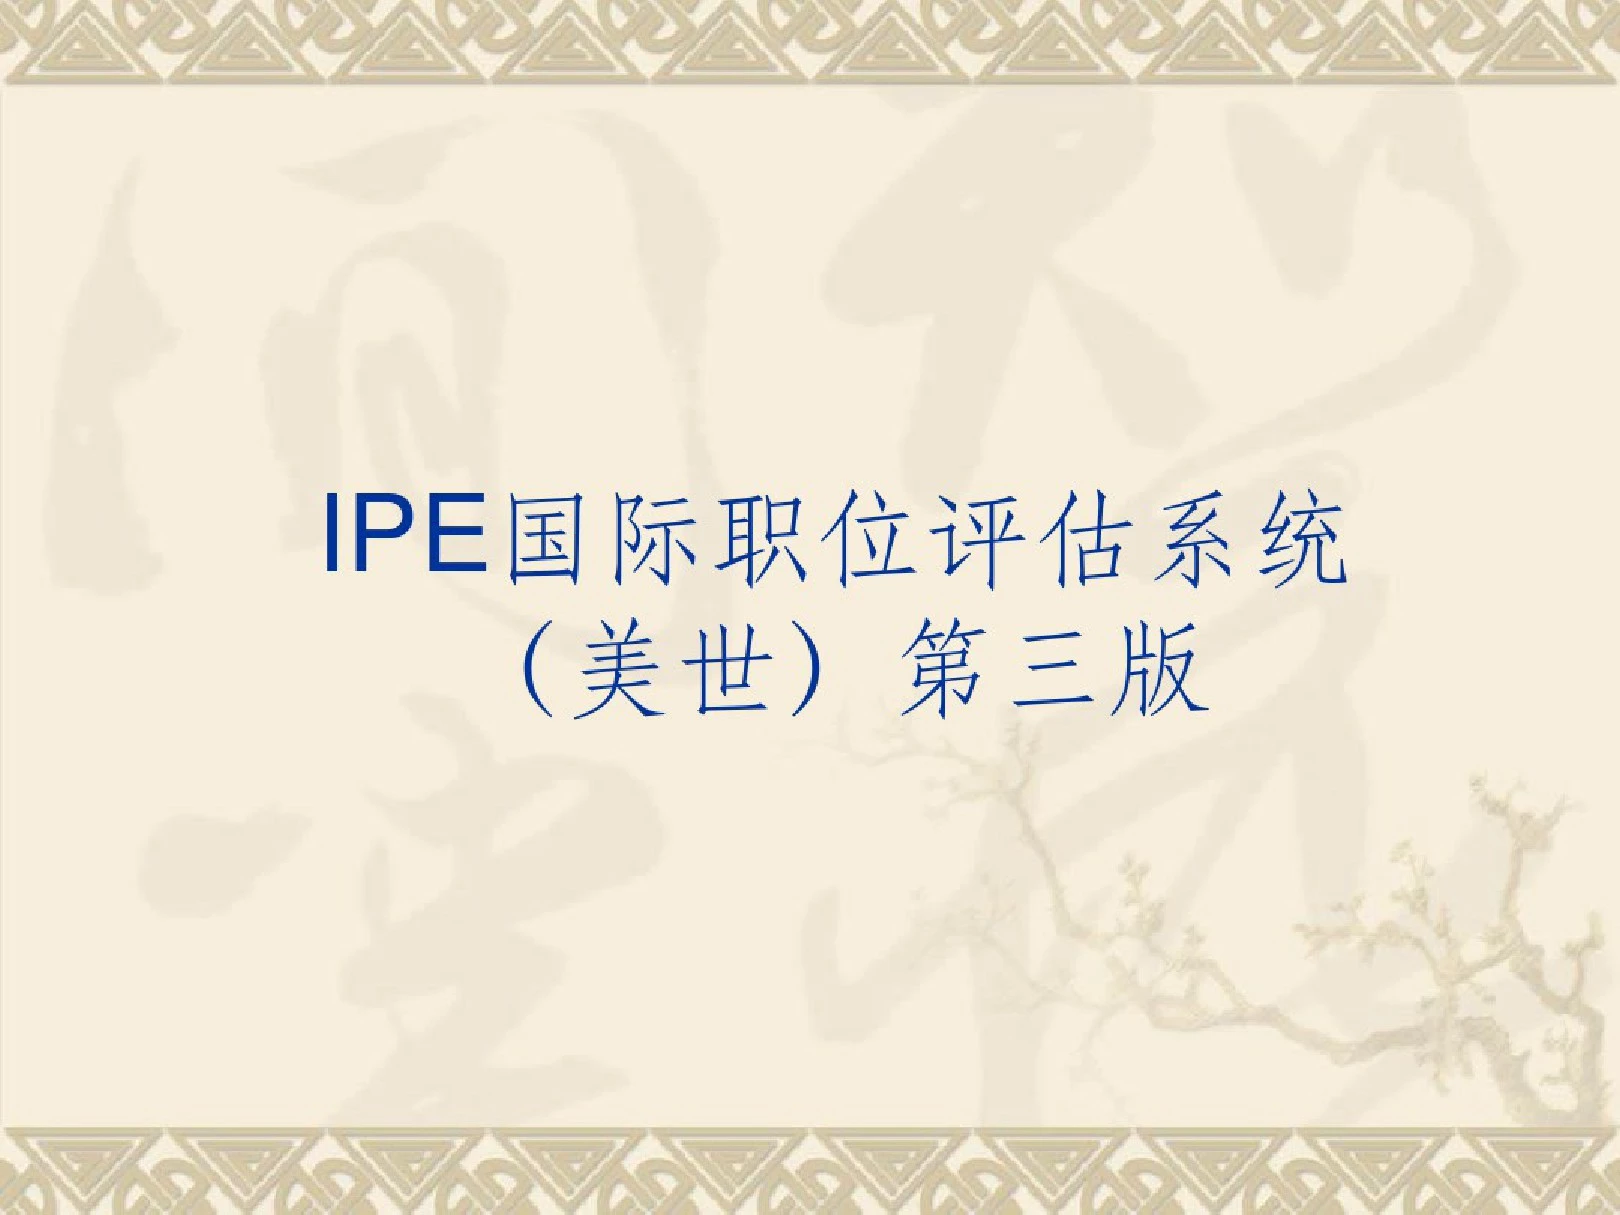 ipe国际职位评估系统